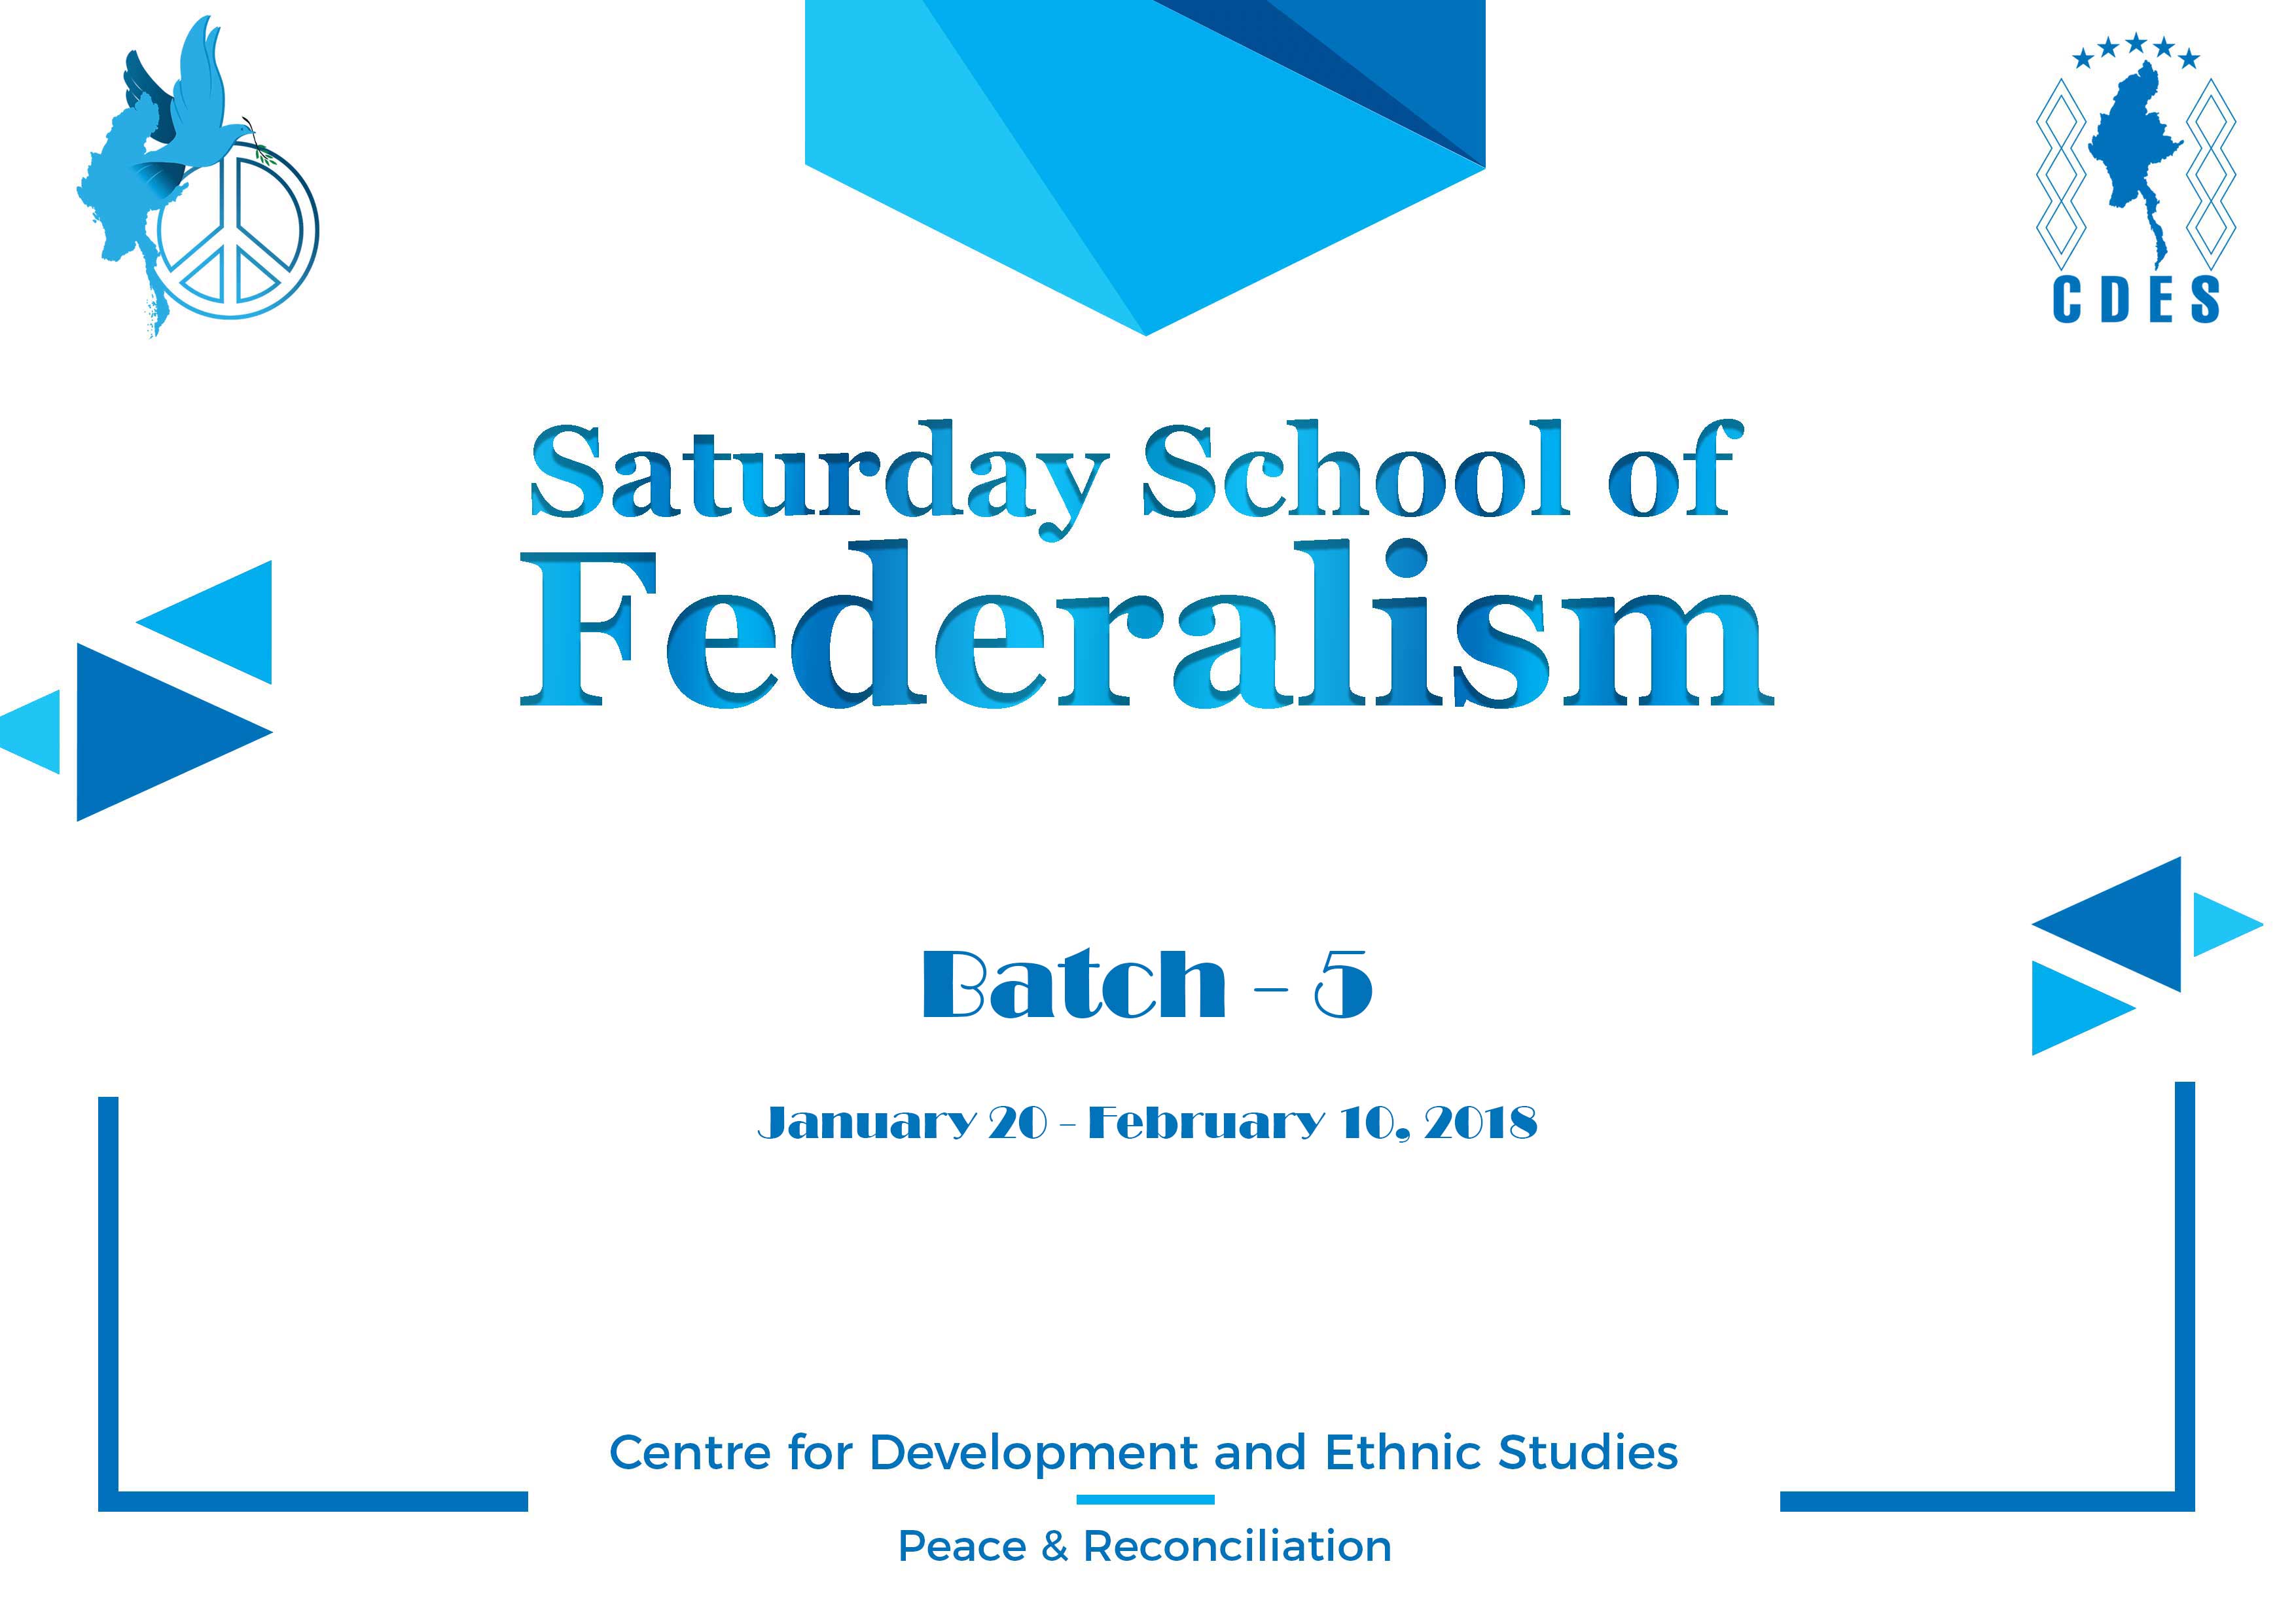 Saturday School of Federalism (Batch-5)